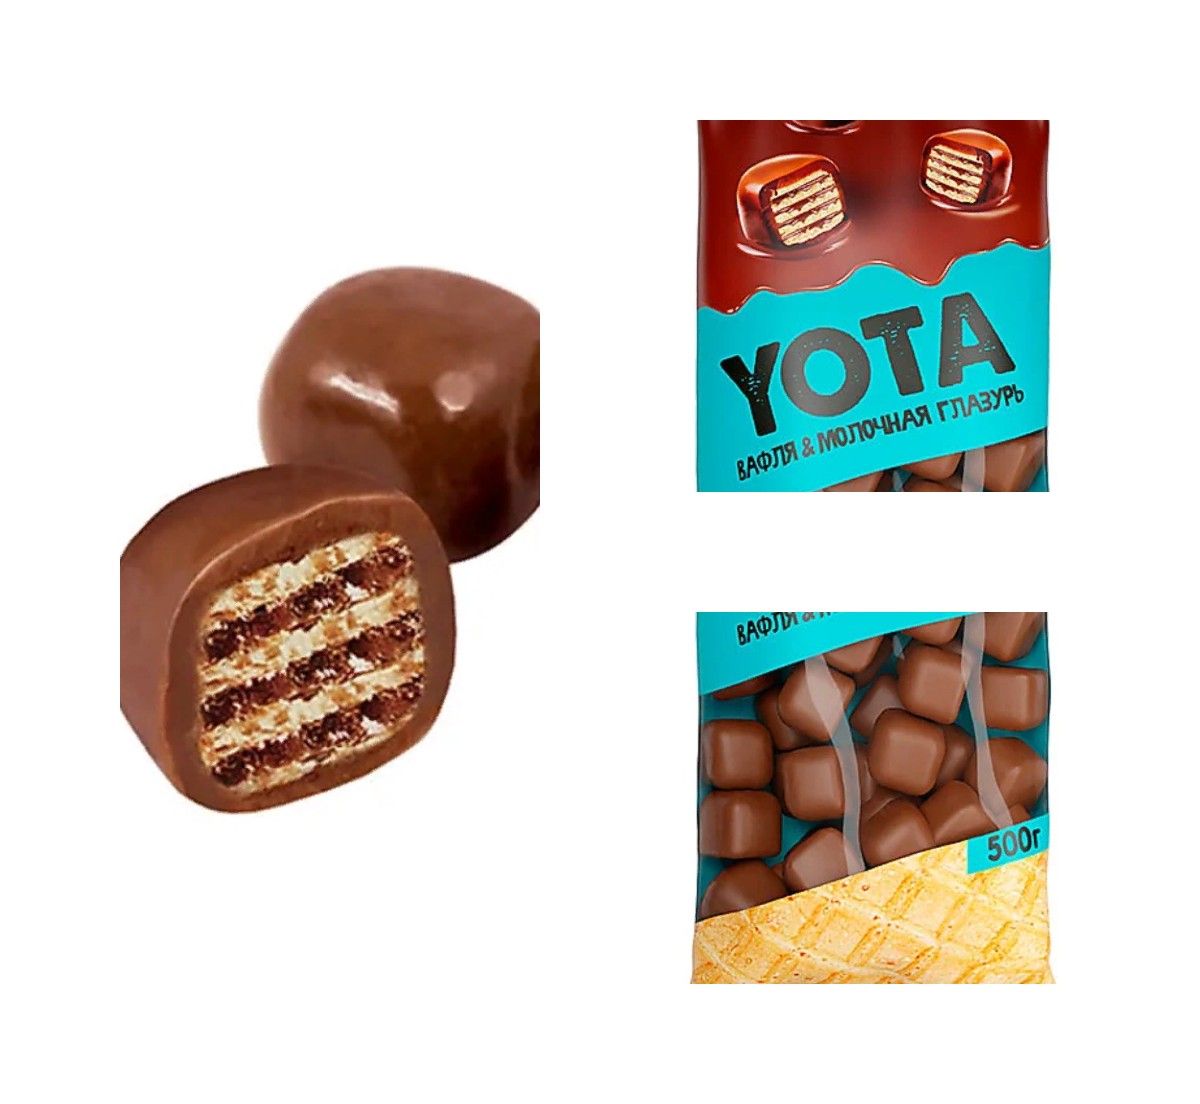 Драже вафельный кубик. «Yota», драже вафля в молочно-шоколадной глазури. Йота драже вафельное в Молочном шоколаде. Ета вафельные шарики.